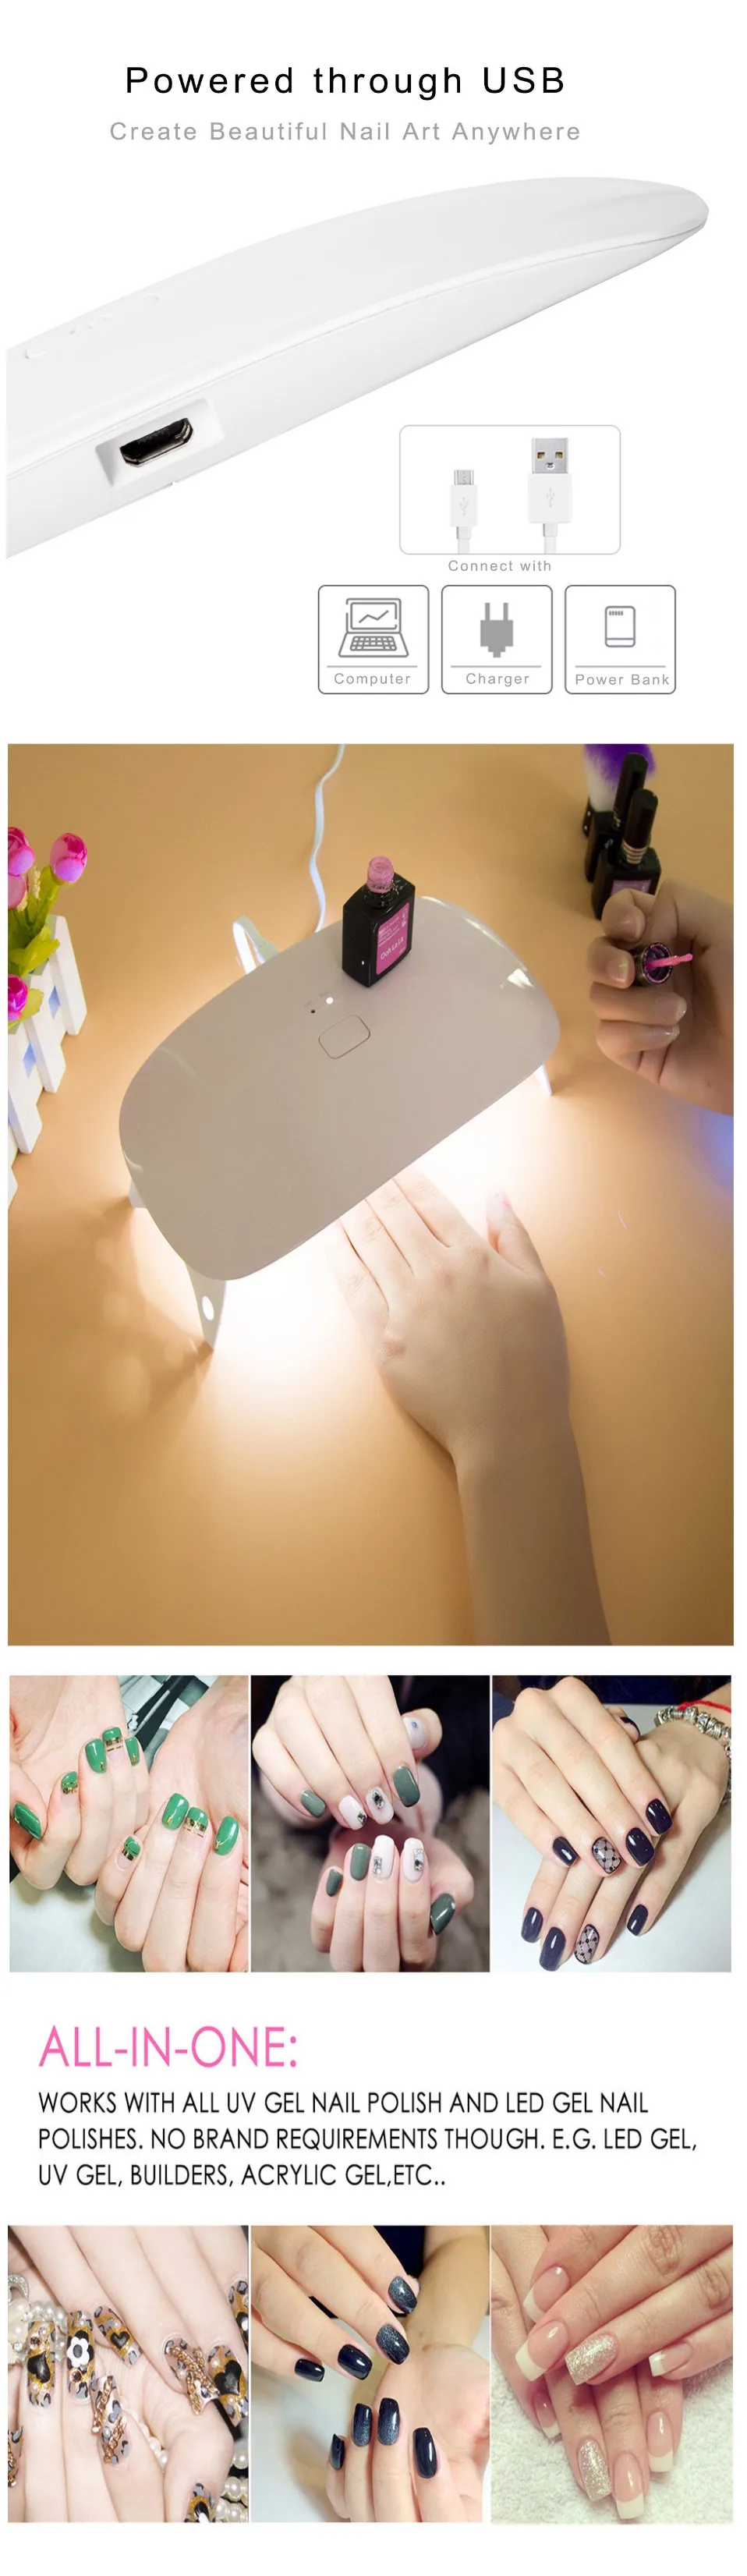 Cappucci 24 Вт Сушилка для ногтей Miniplus светодиодная УФ-лампа для ногтей 15 светодиодный s быстрая отверждение лак для ногтей гель с USB зарядкой